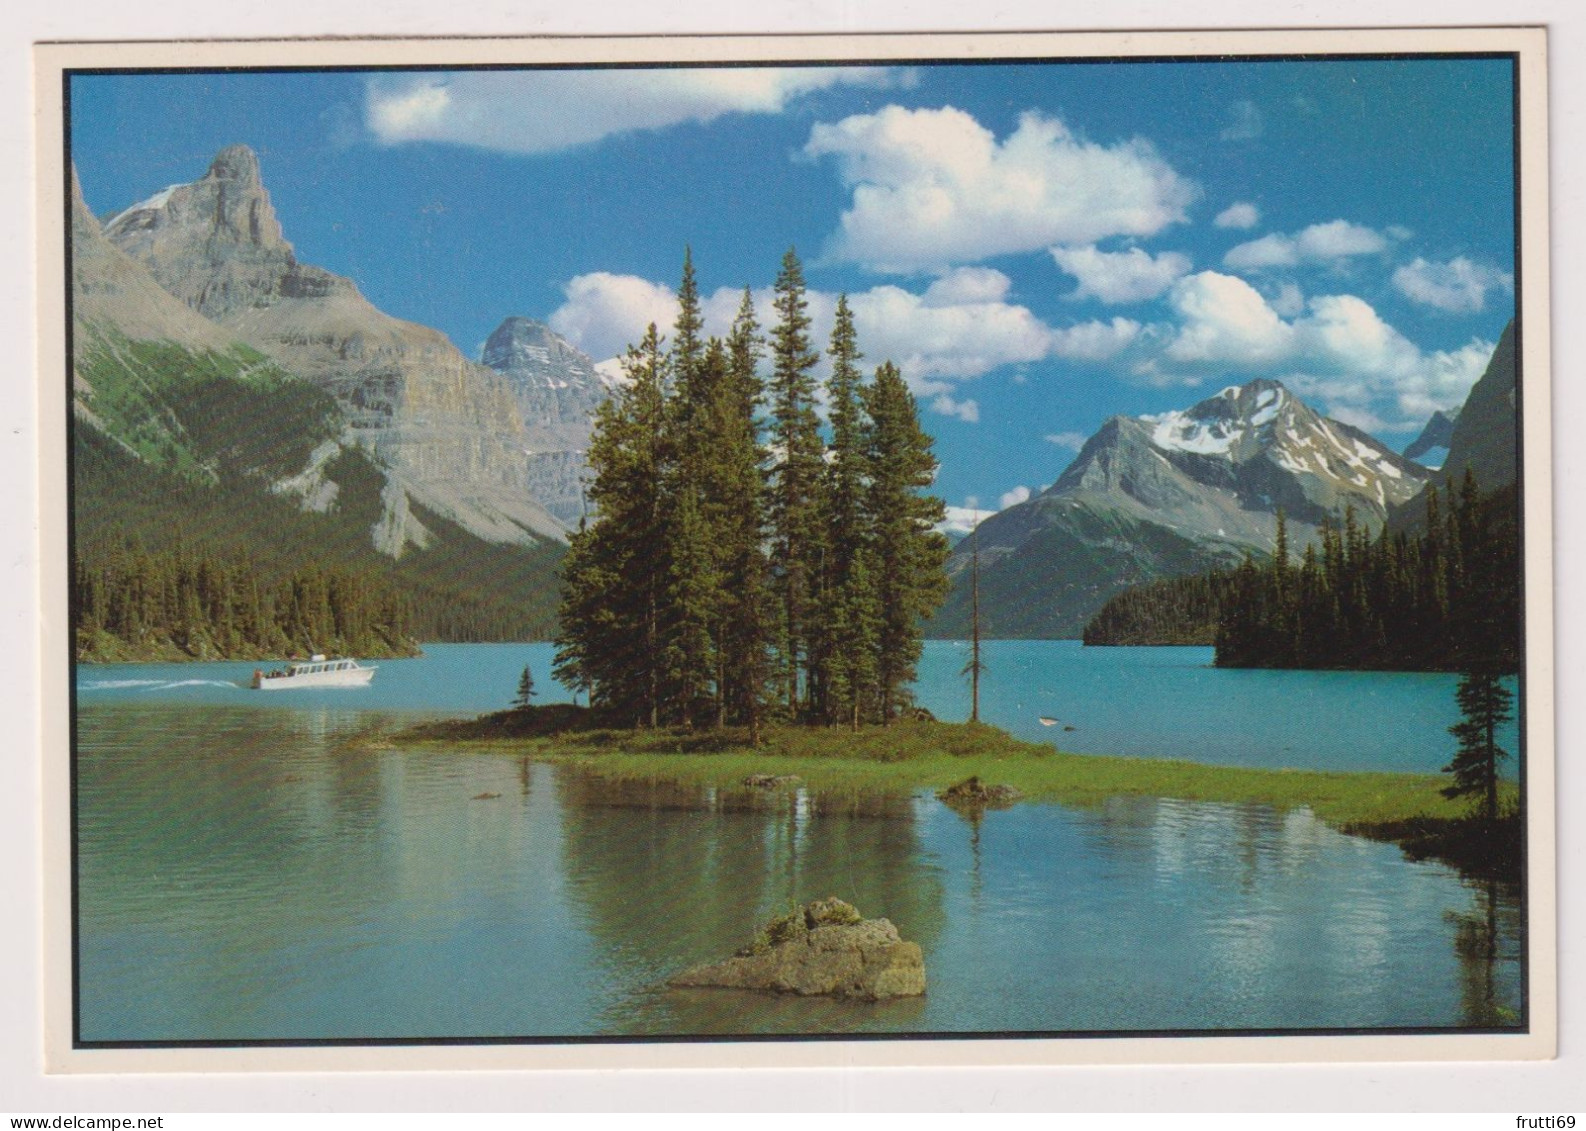 AK 199311 CANADA - Alberta - Jasper National Park - Maligne Lake - Jasper